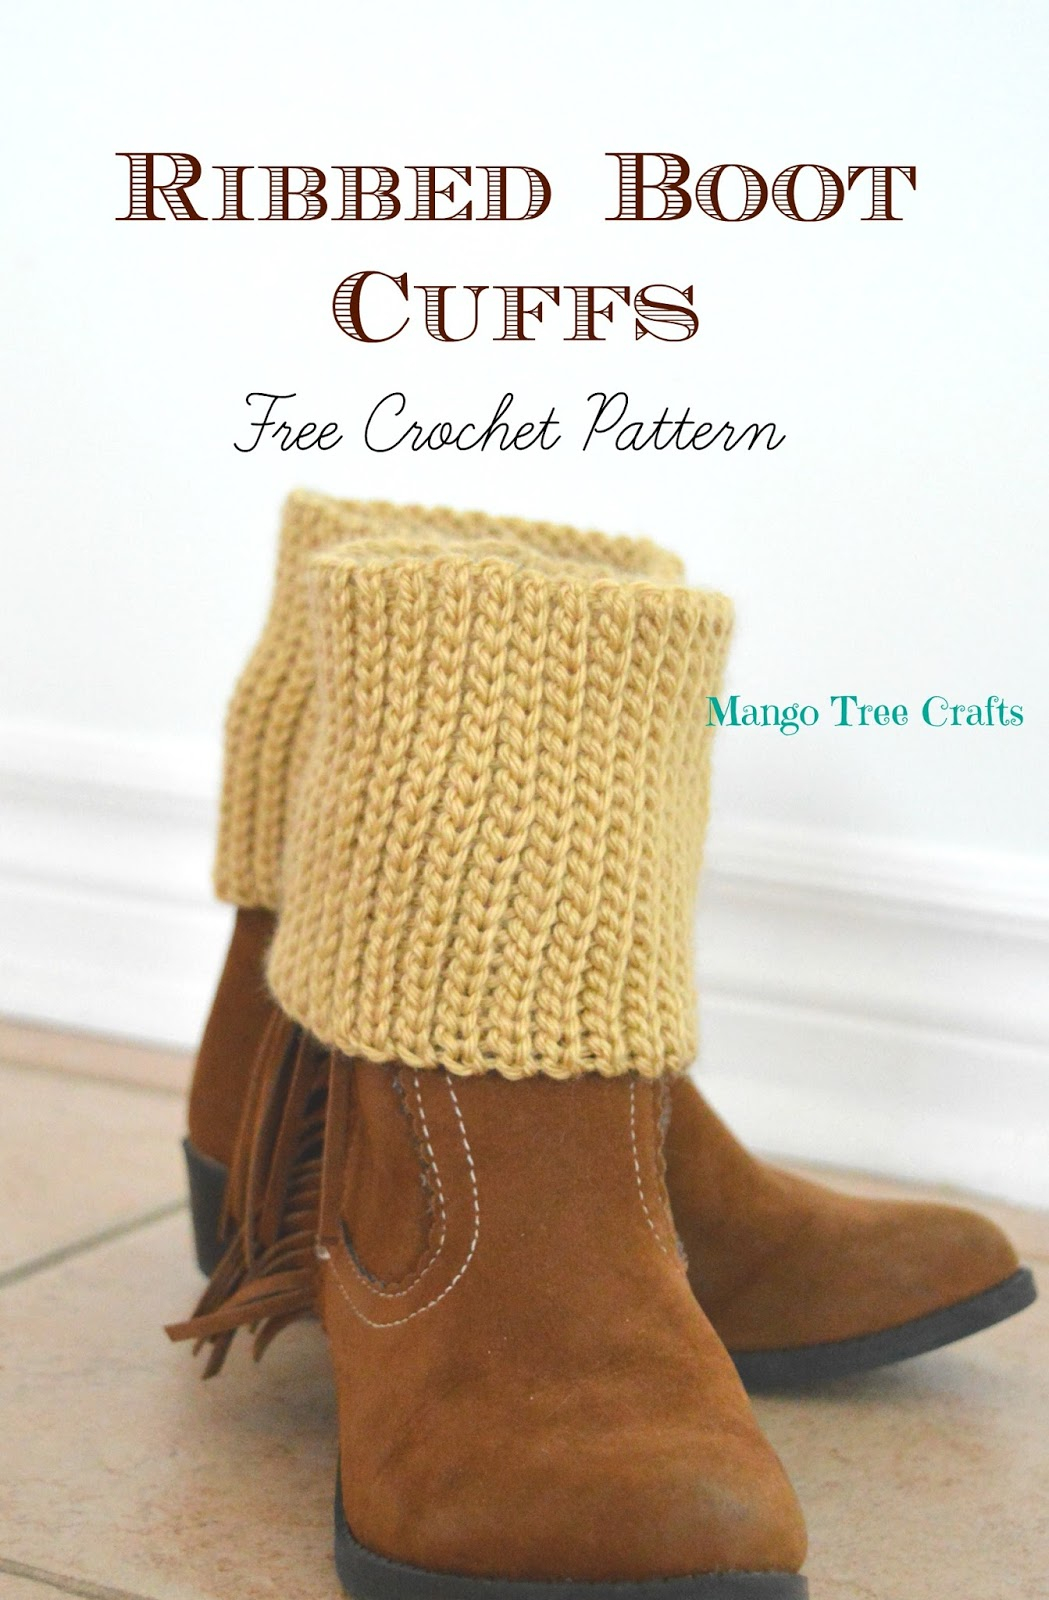 Crochet Boot Cuff Pattern Ribbed Boot Cuffs Free Crochet Pattern